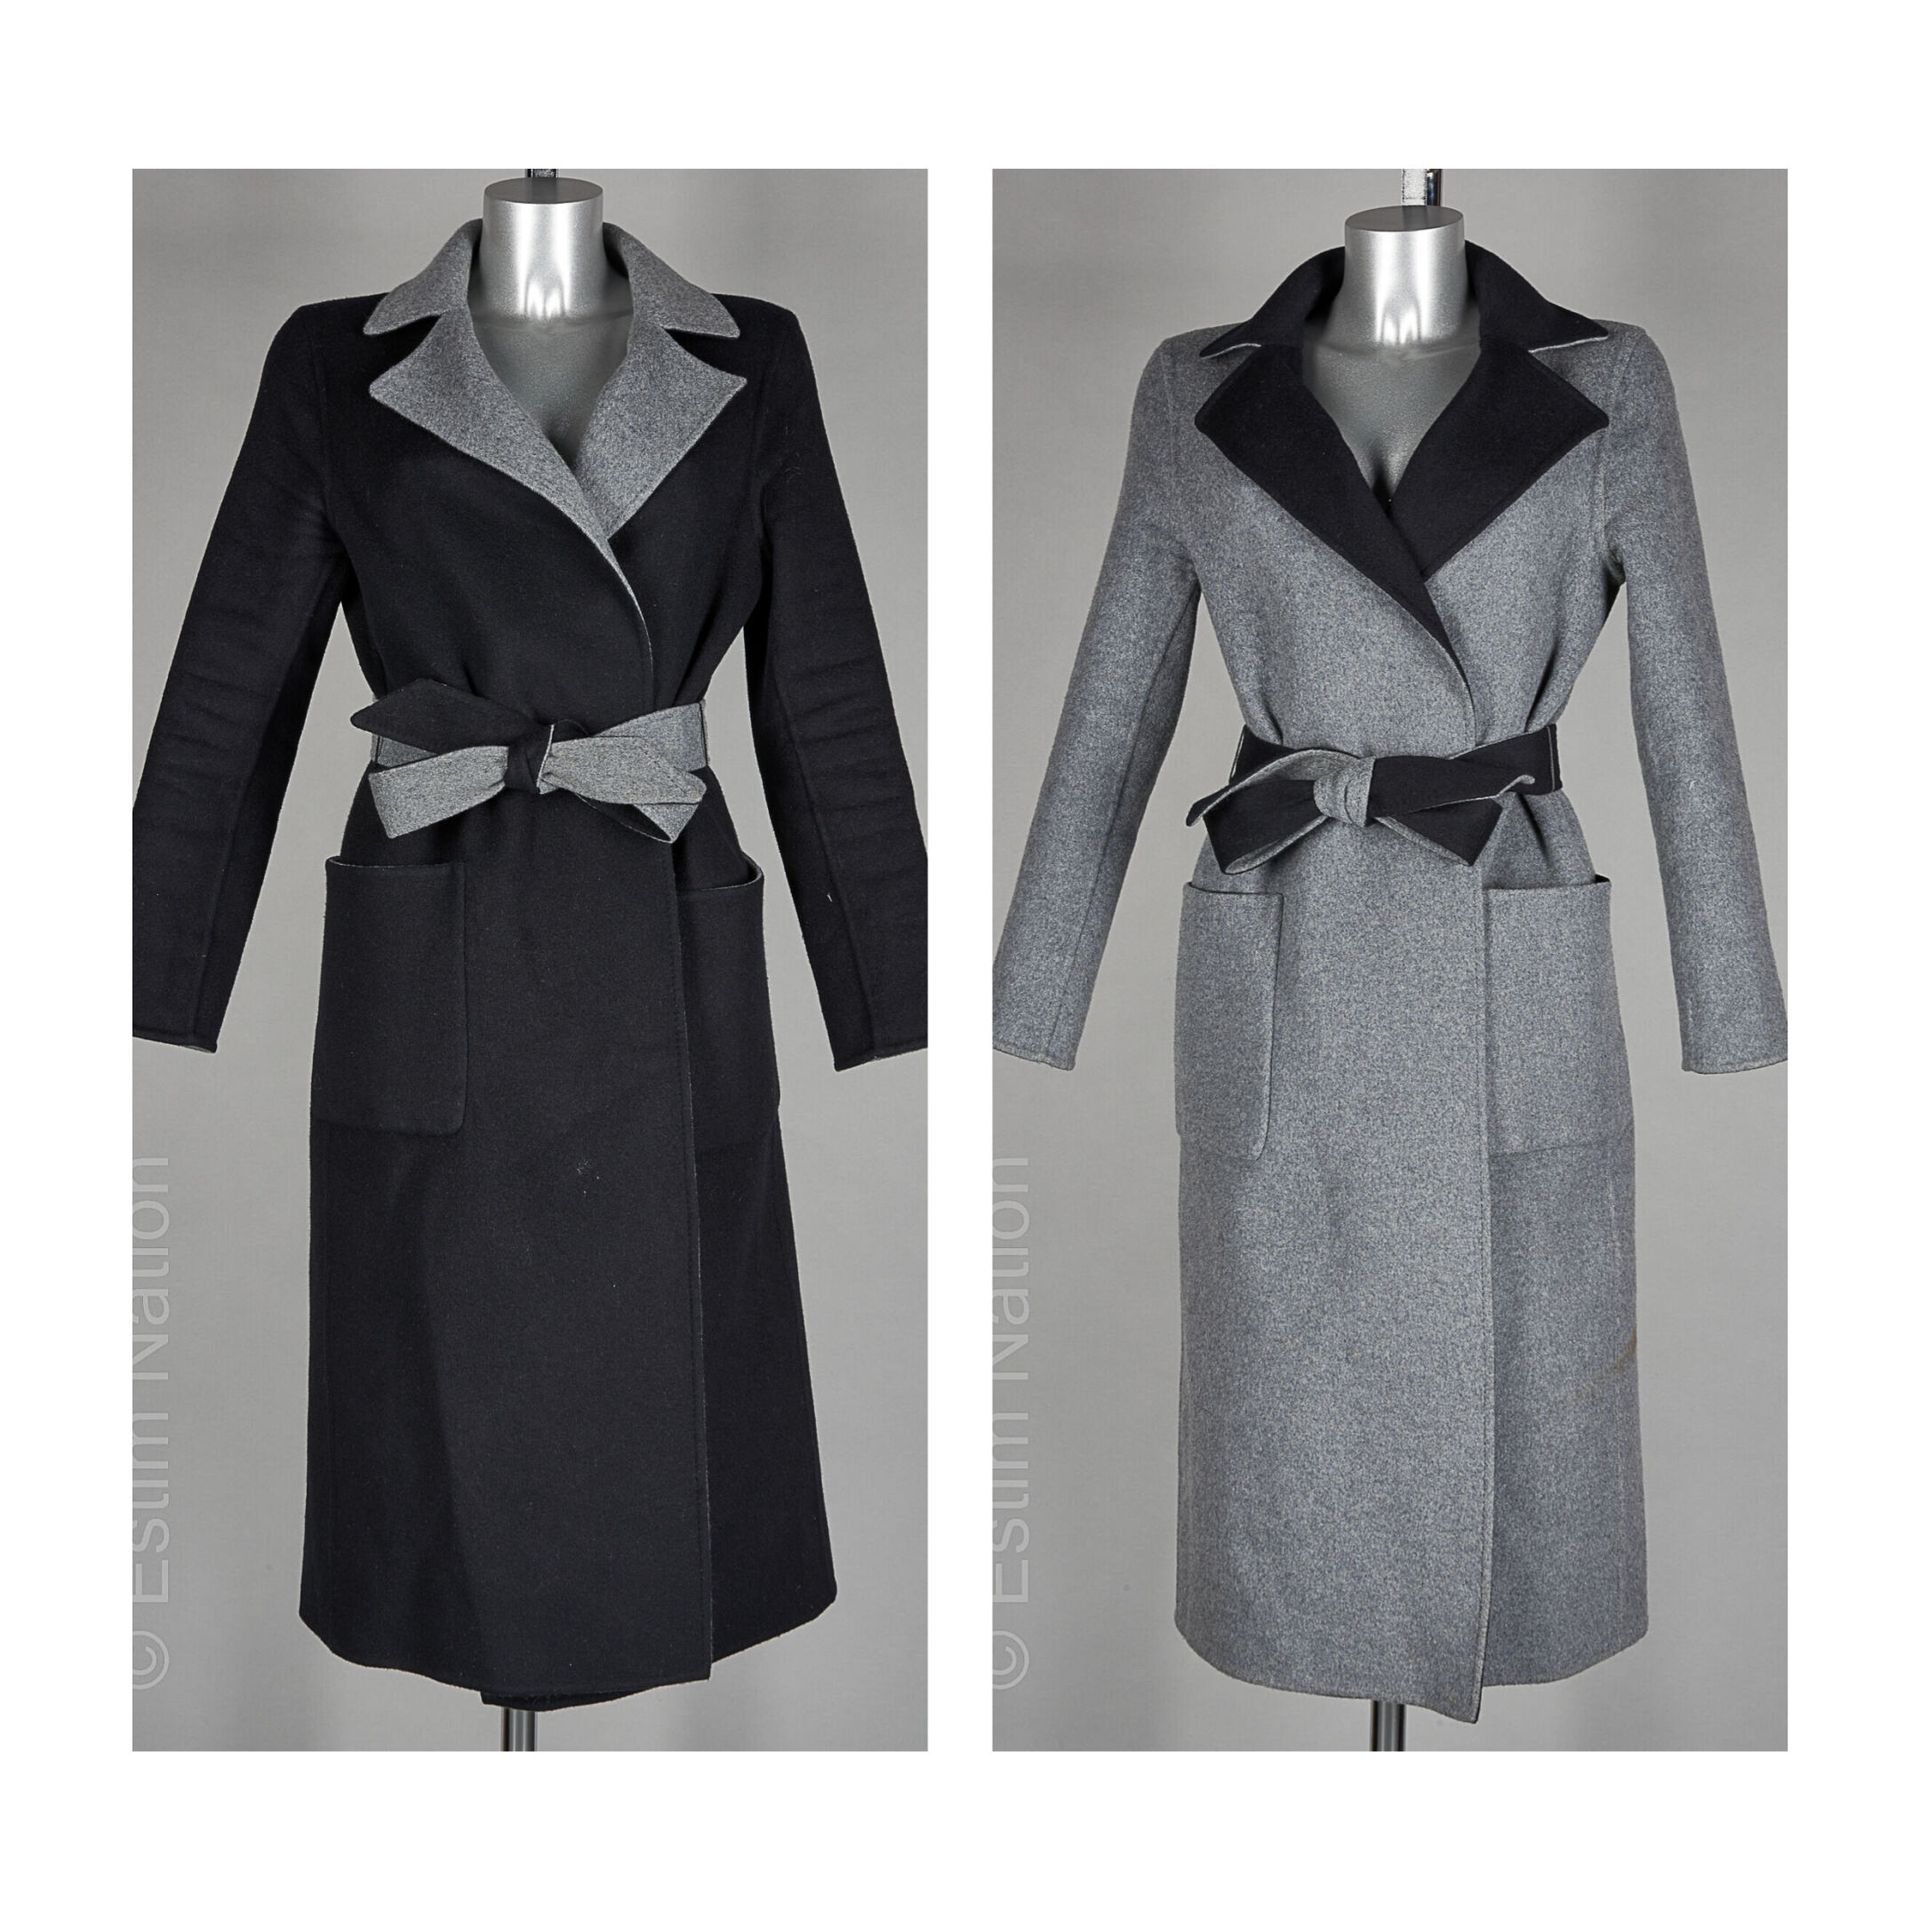 KUJTEN 黑色和灰色羊绒大衣，缺口领，腰带，两个口袋（T 2）（灰色一侧有污渍）。